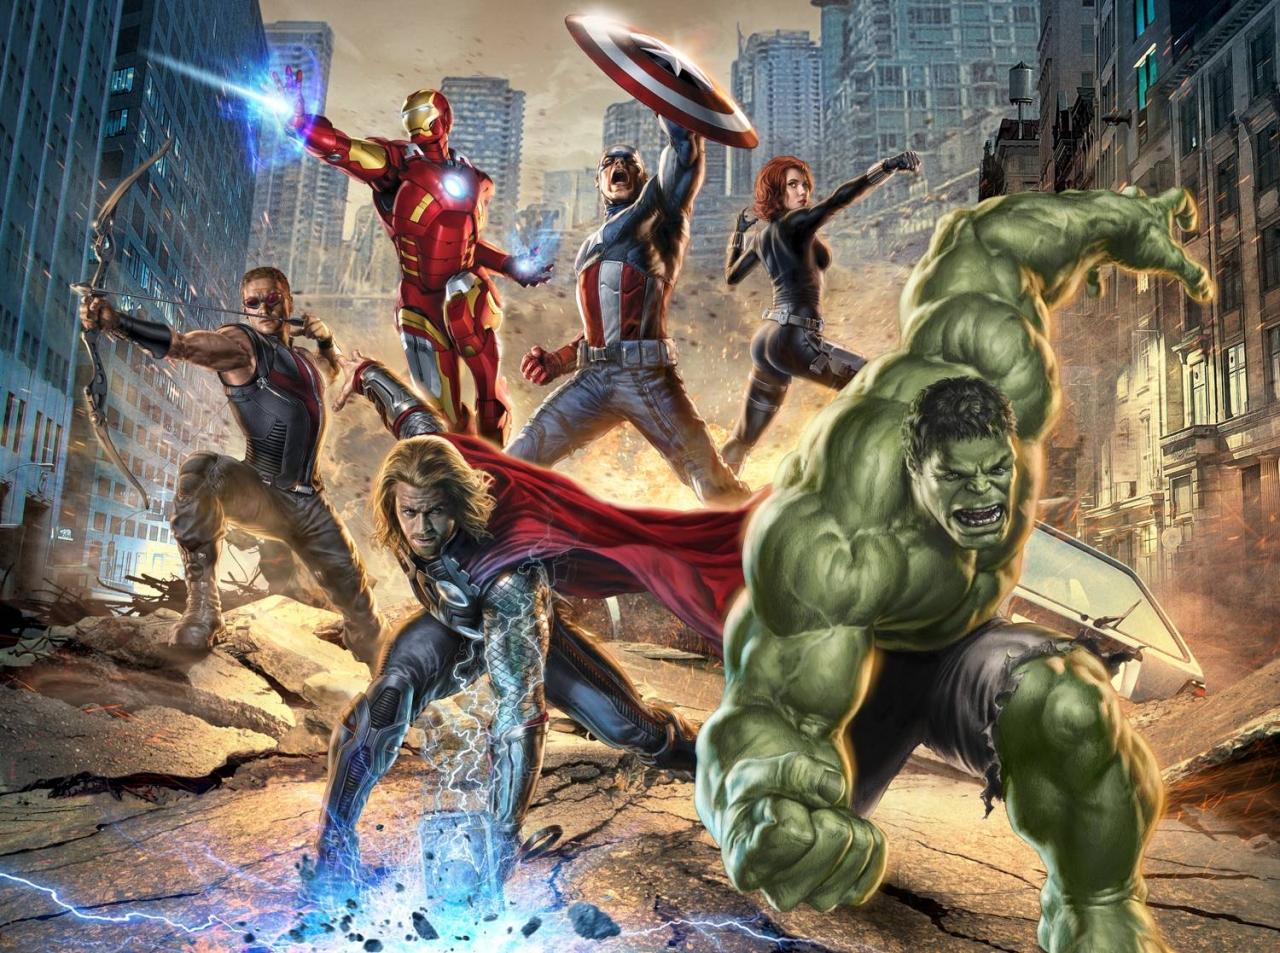 Des visuels promos pour The Avengers